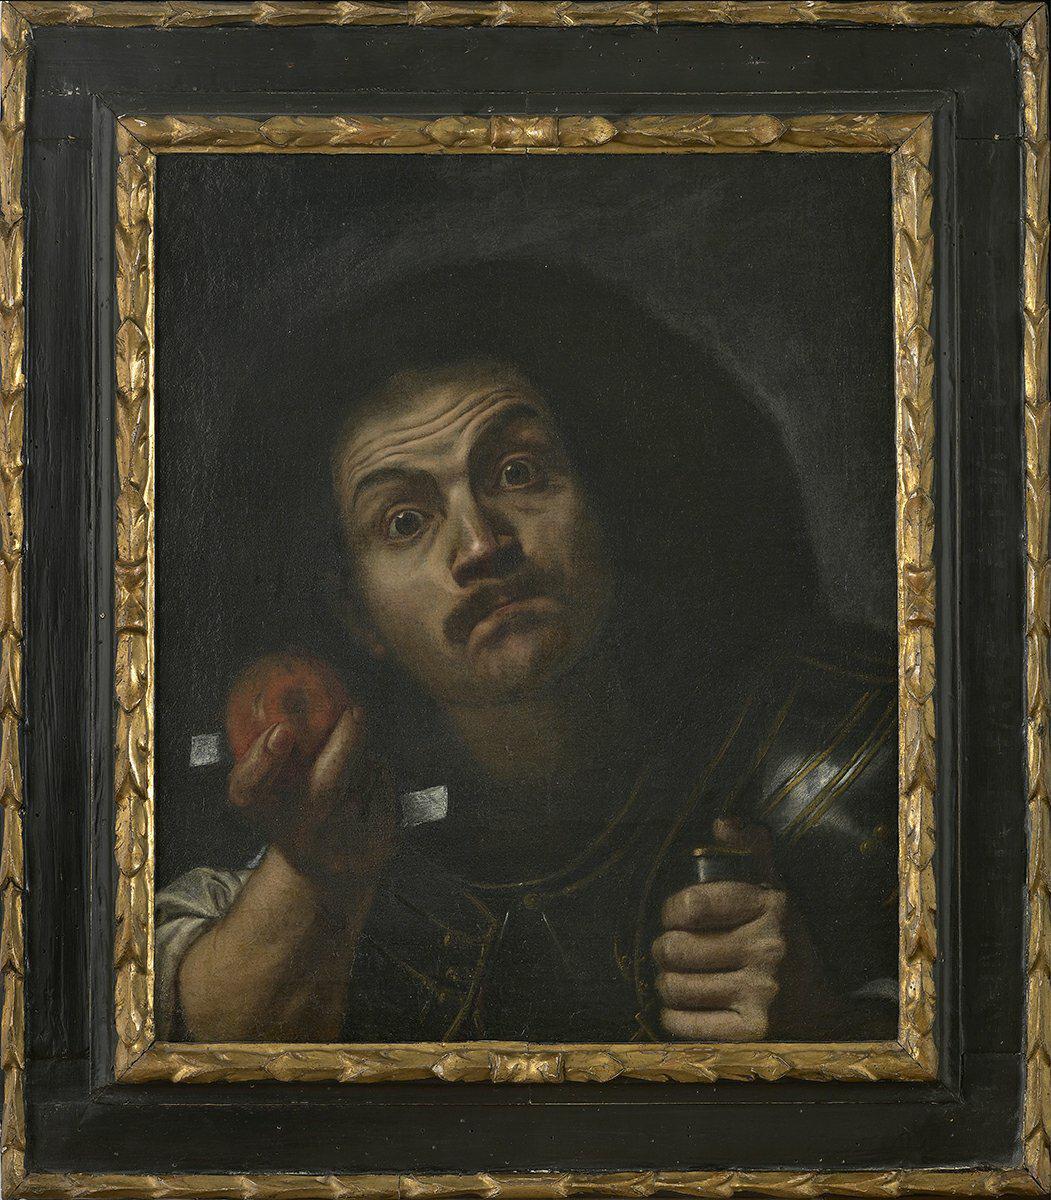 Pietro Bellotti (1625 - 1700), Autoritratto in forma di stupore, olio su tela, 1654-1655